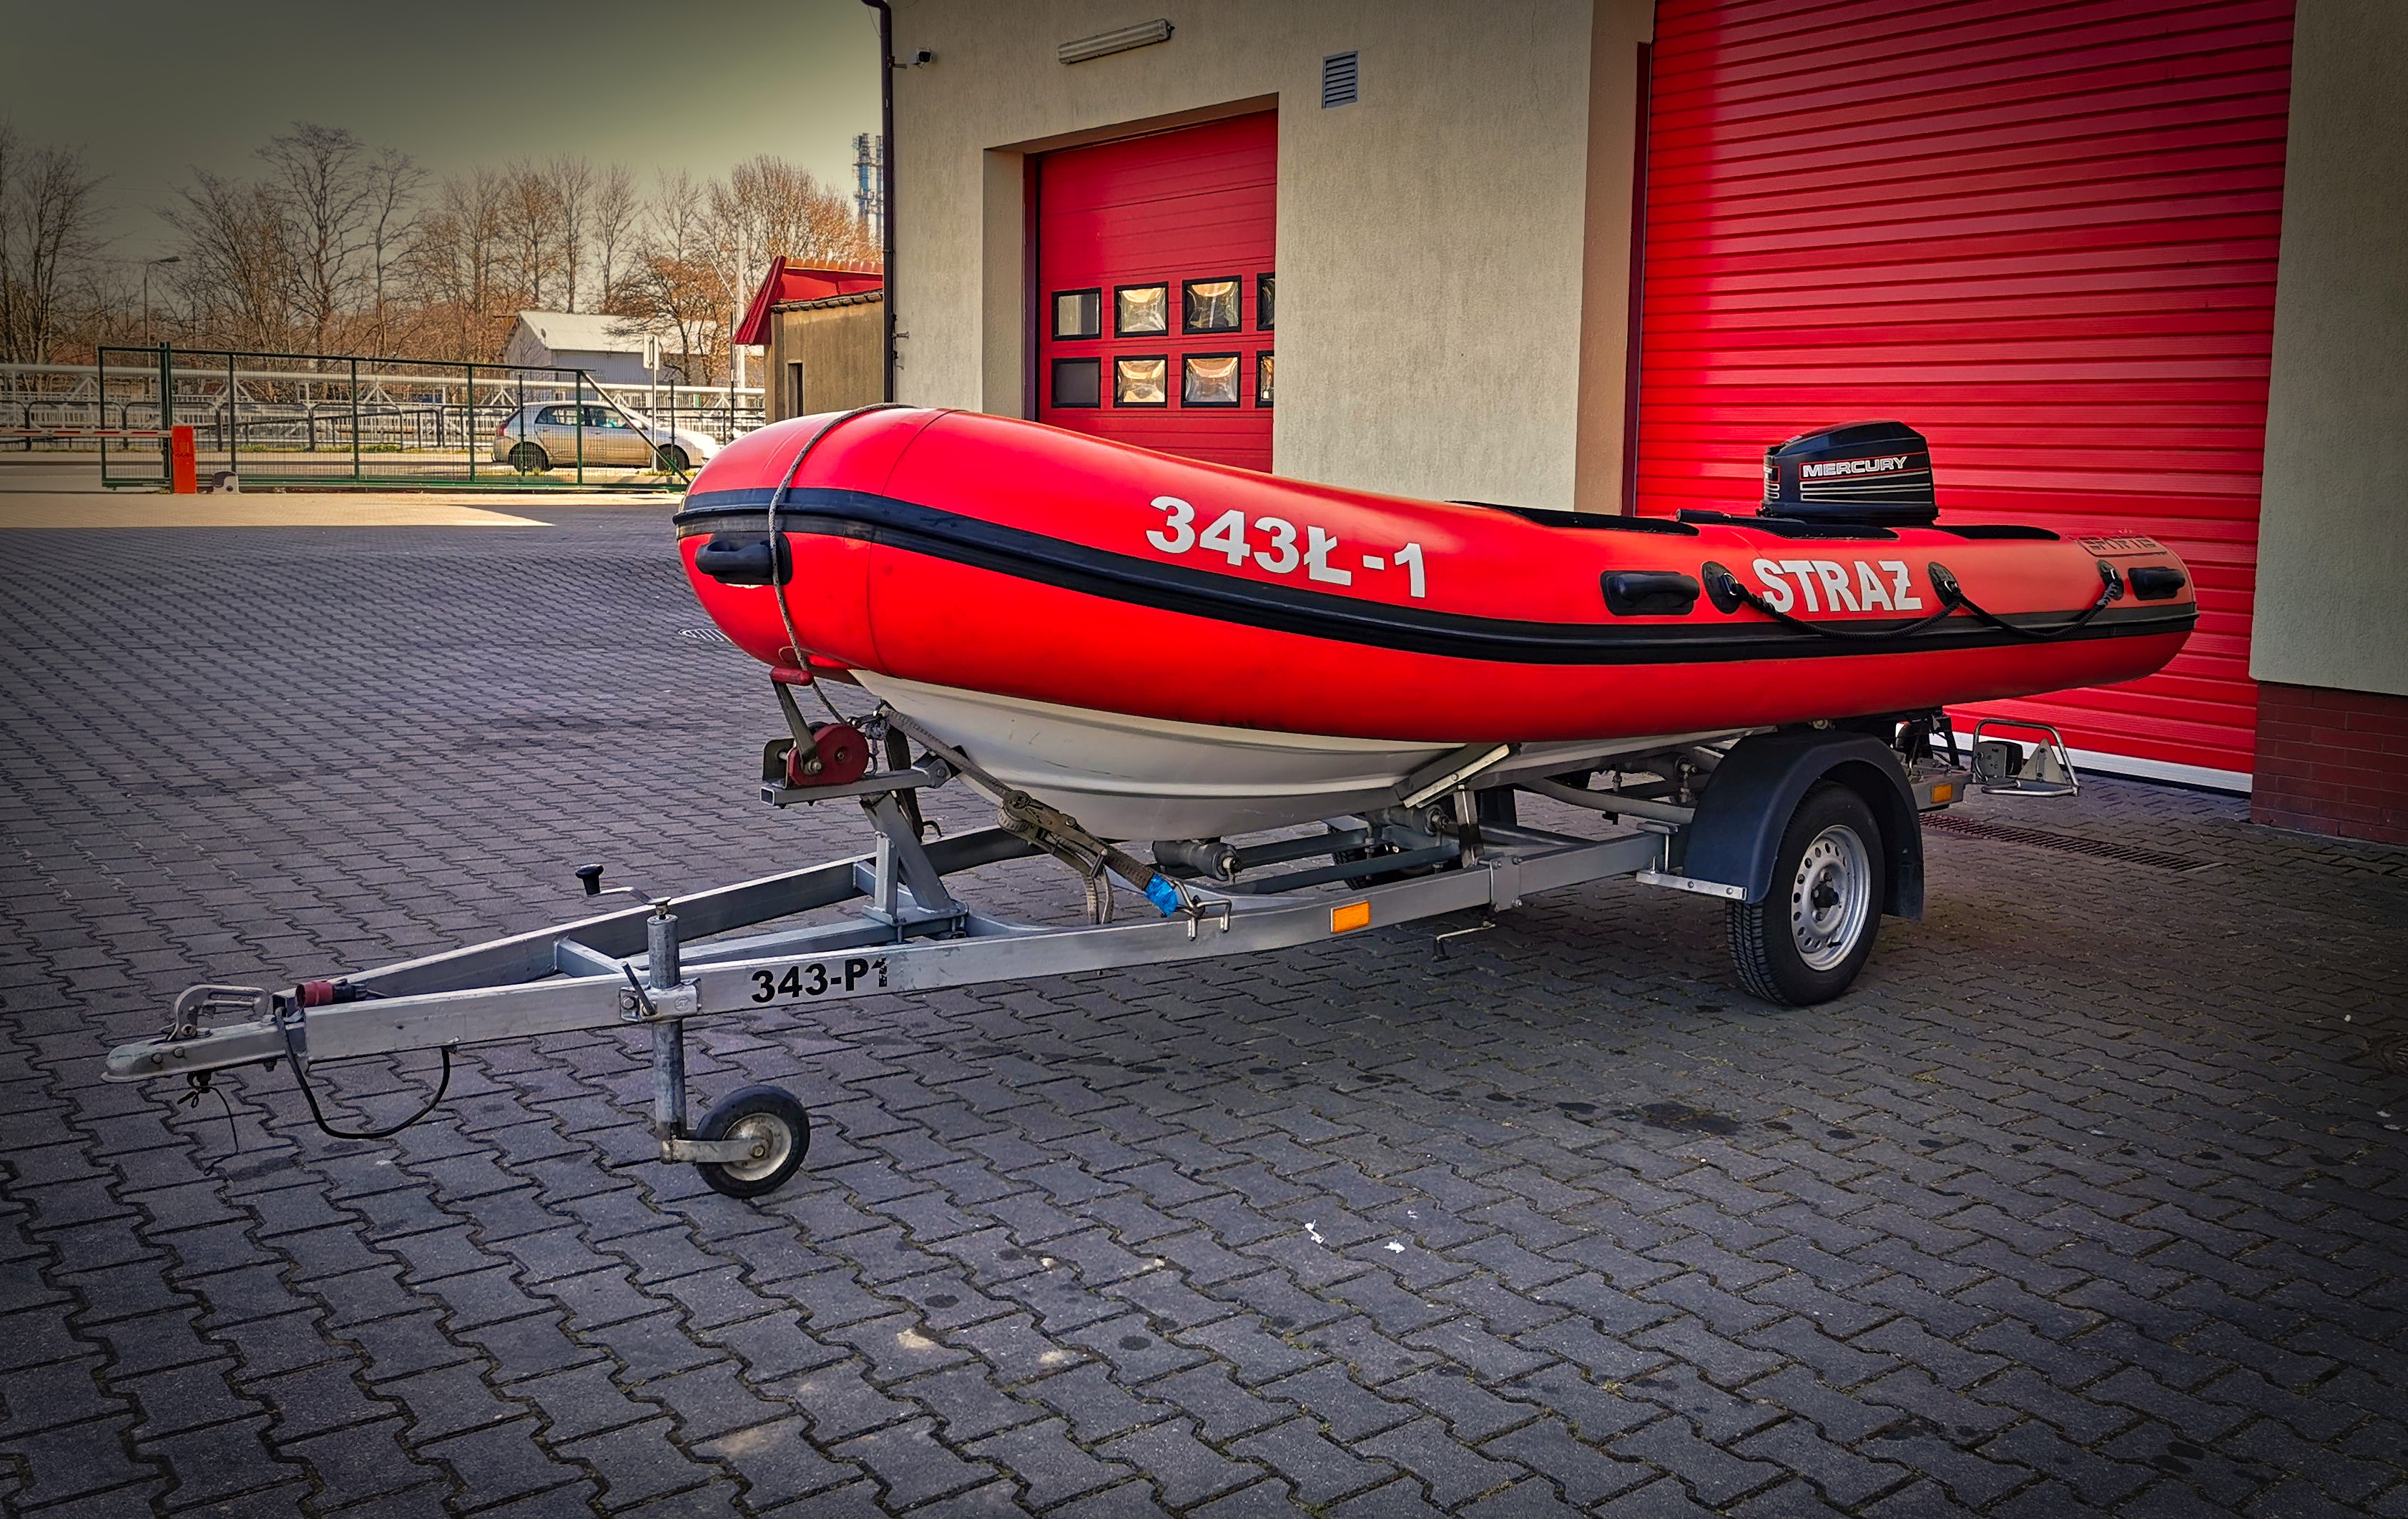 Ł1 łódź hybrydowa Sportis seria R.I.B Clasic MC-4500, Silnik 19kW napęd śrubowy, 6 osób. Na przyczepce P1.